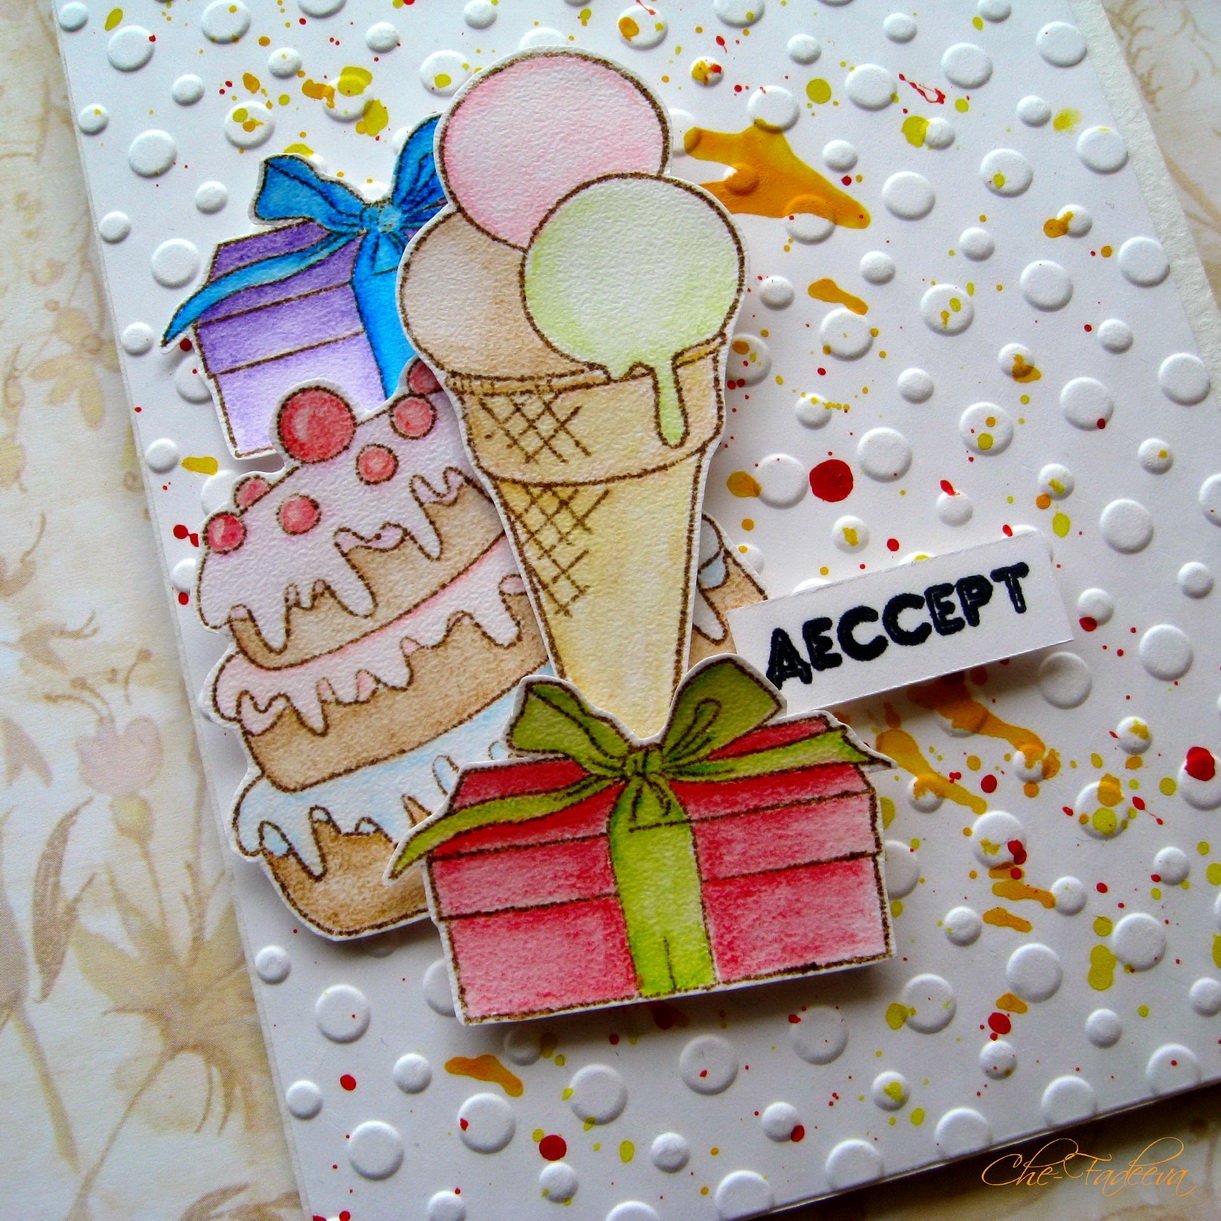 Открытки на день рождения мальчику своими руками. Открытка со сладостями. Идеи для открыток на день рождения. Открытка из сладостей. Открытка со сладостями на день рождения.